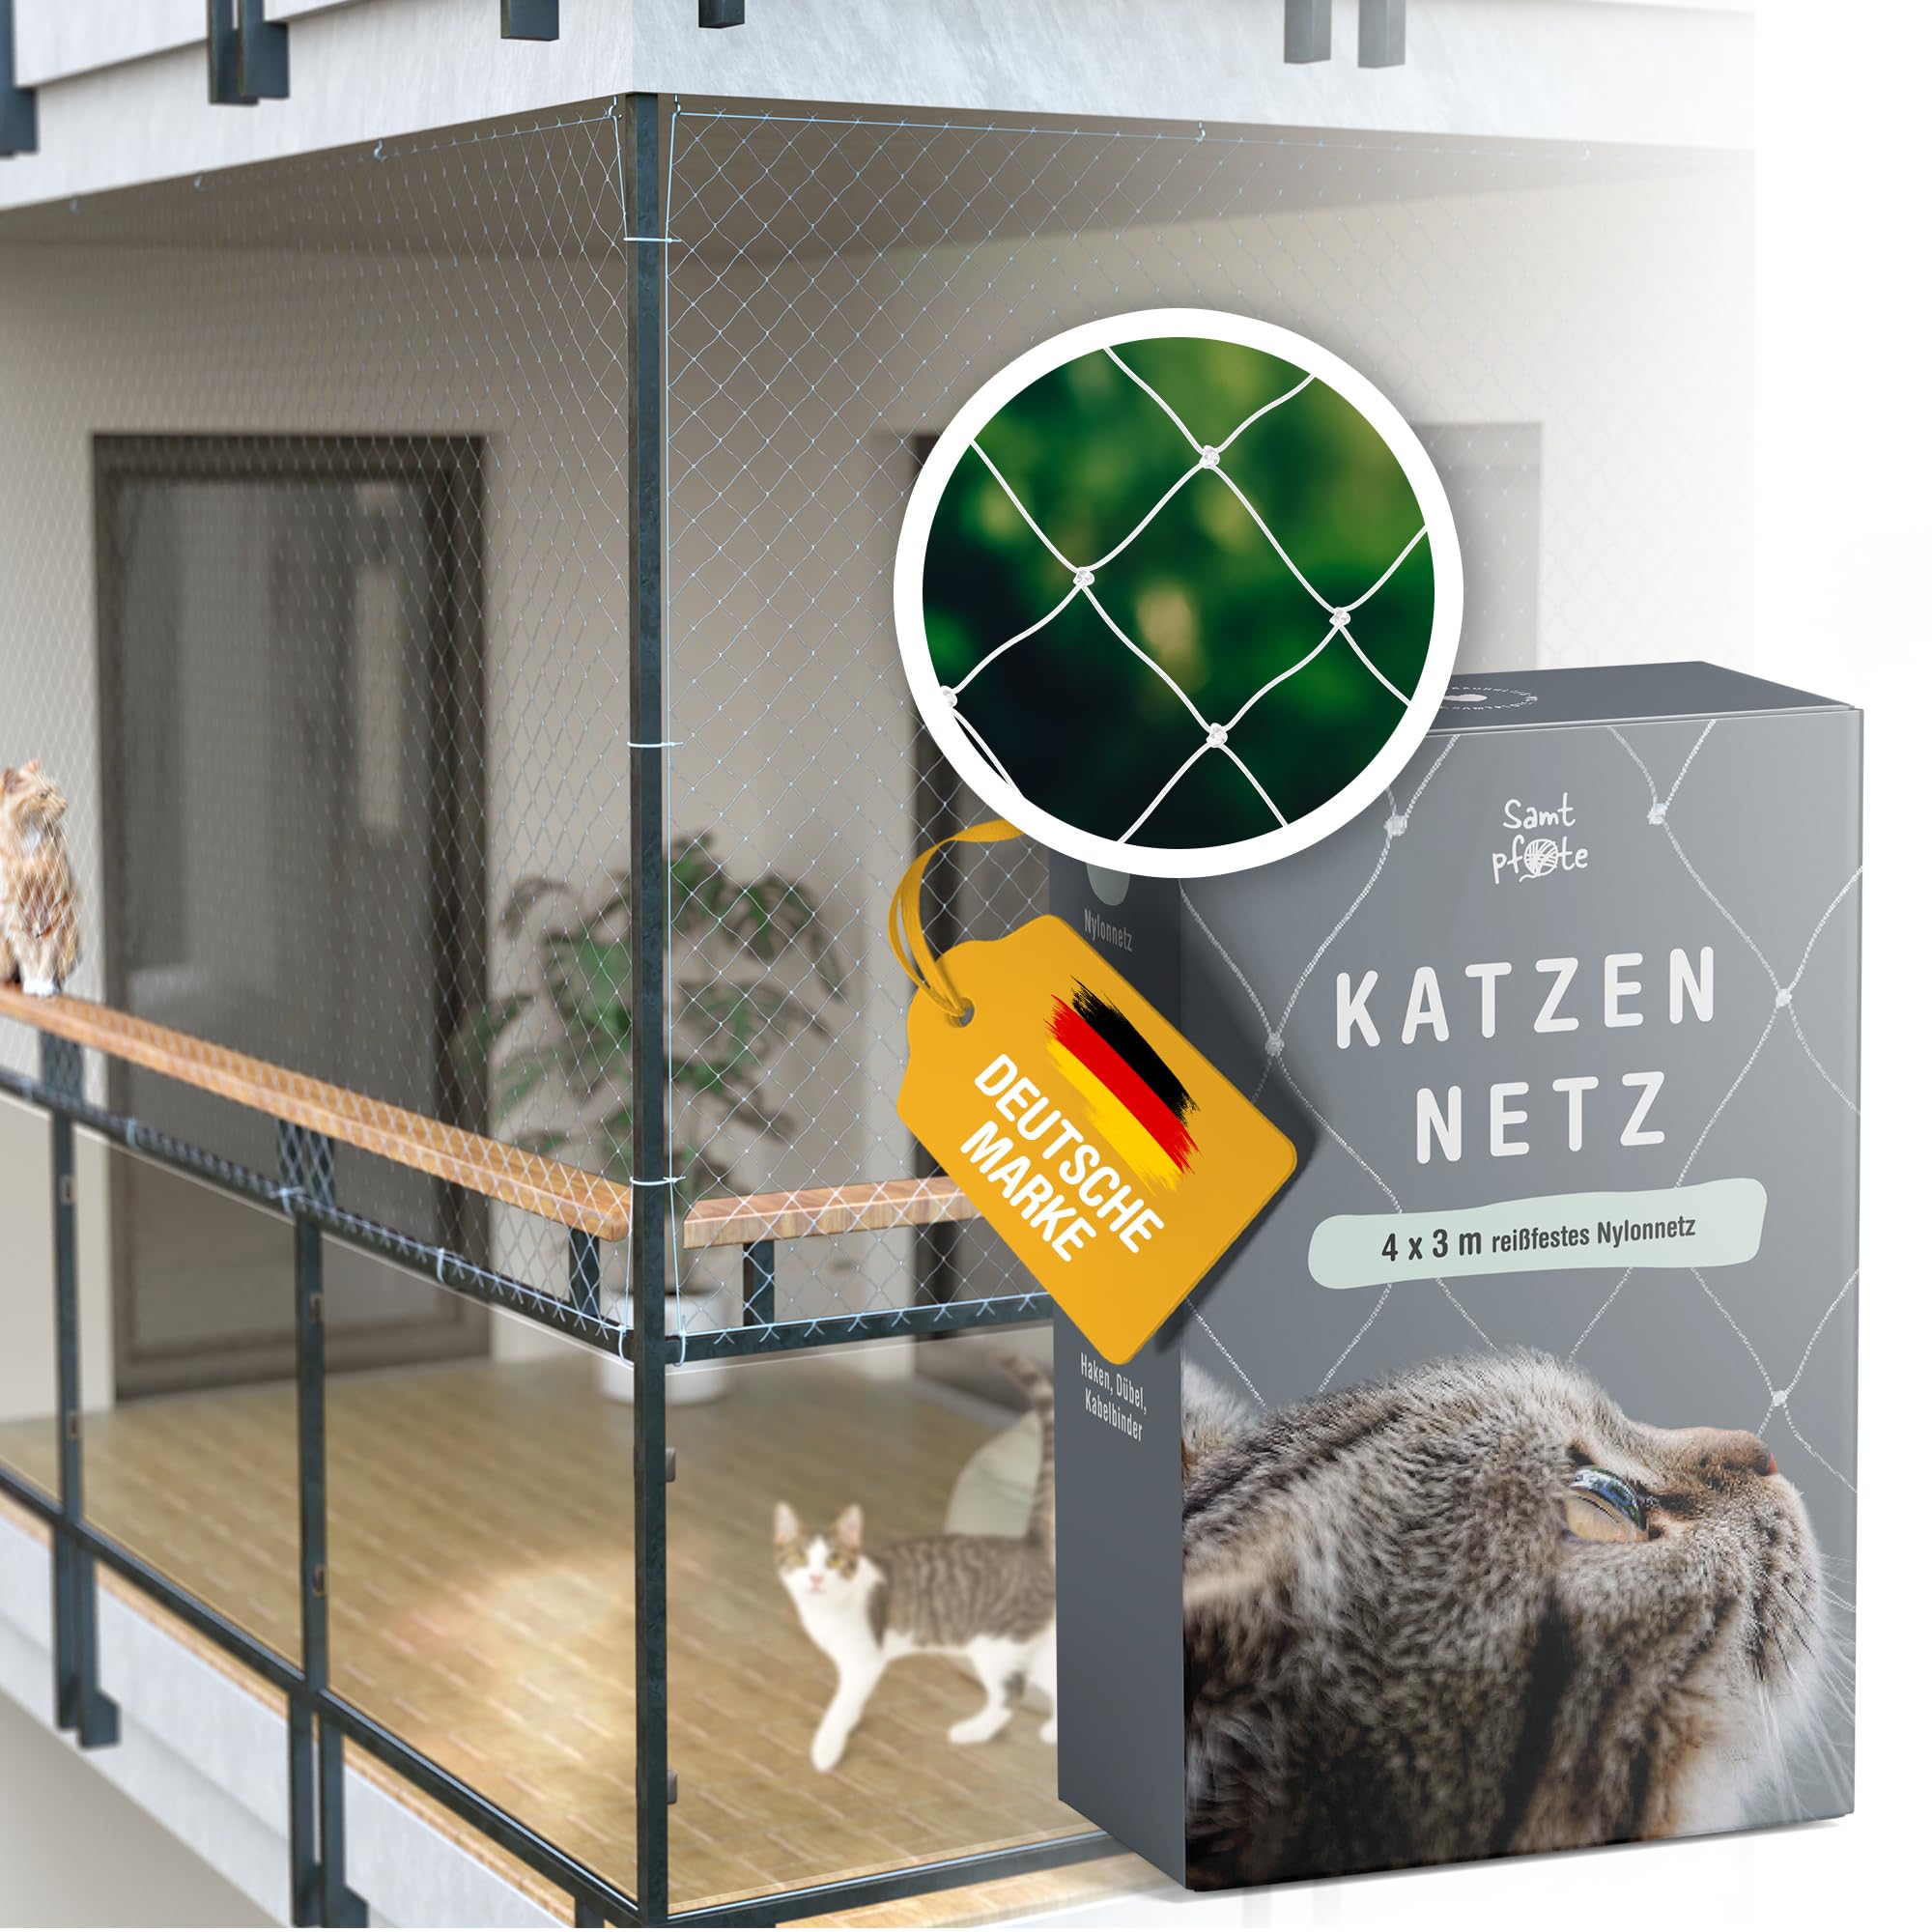 Samtpfote® Katzennetz für Balkon & Fenster - 6 x 3 m - Balkonnetz transparent und reißfest - Robustes und langlebiges Katzenschutznetz inkl. Montagematerial